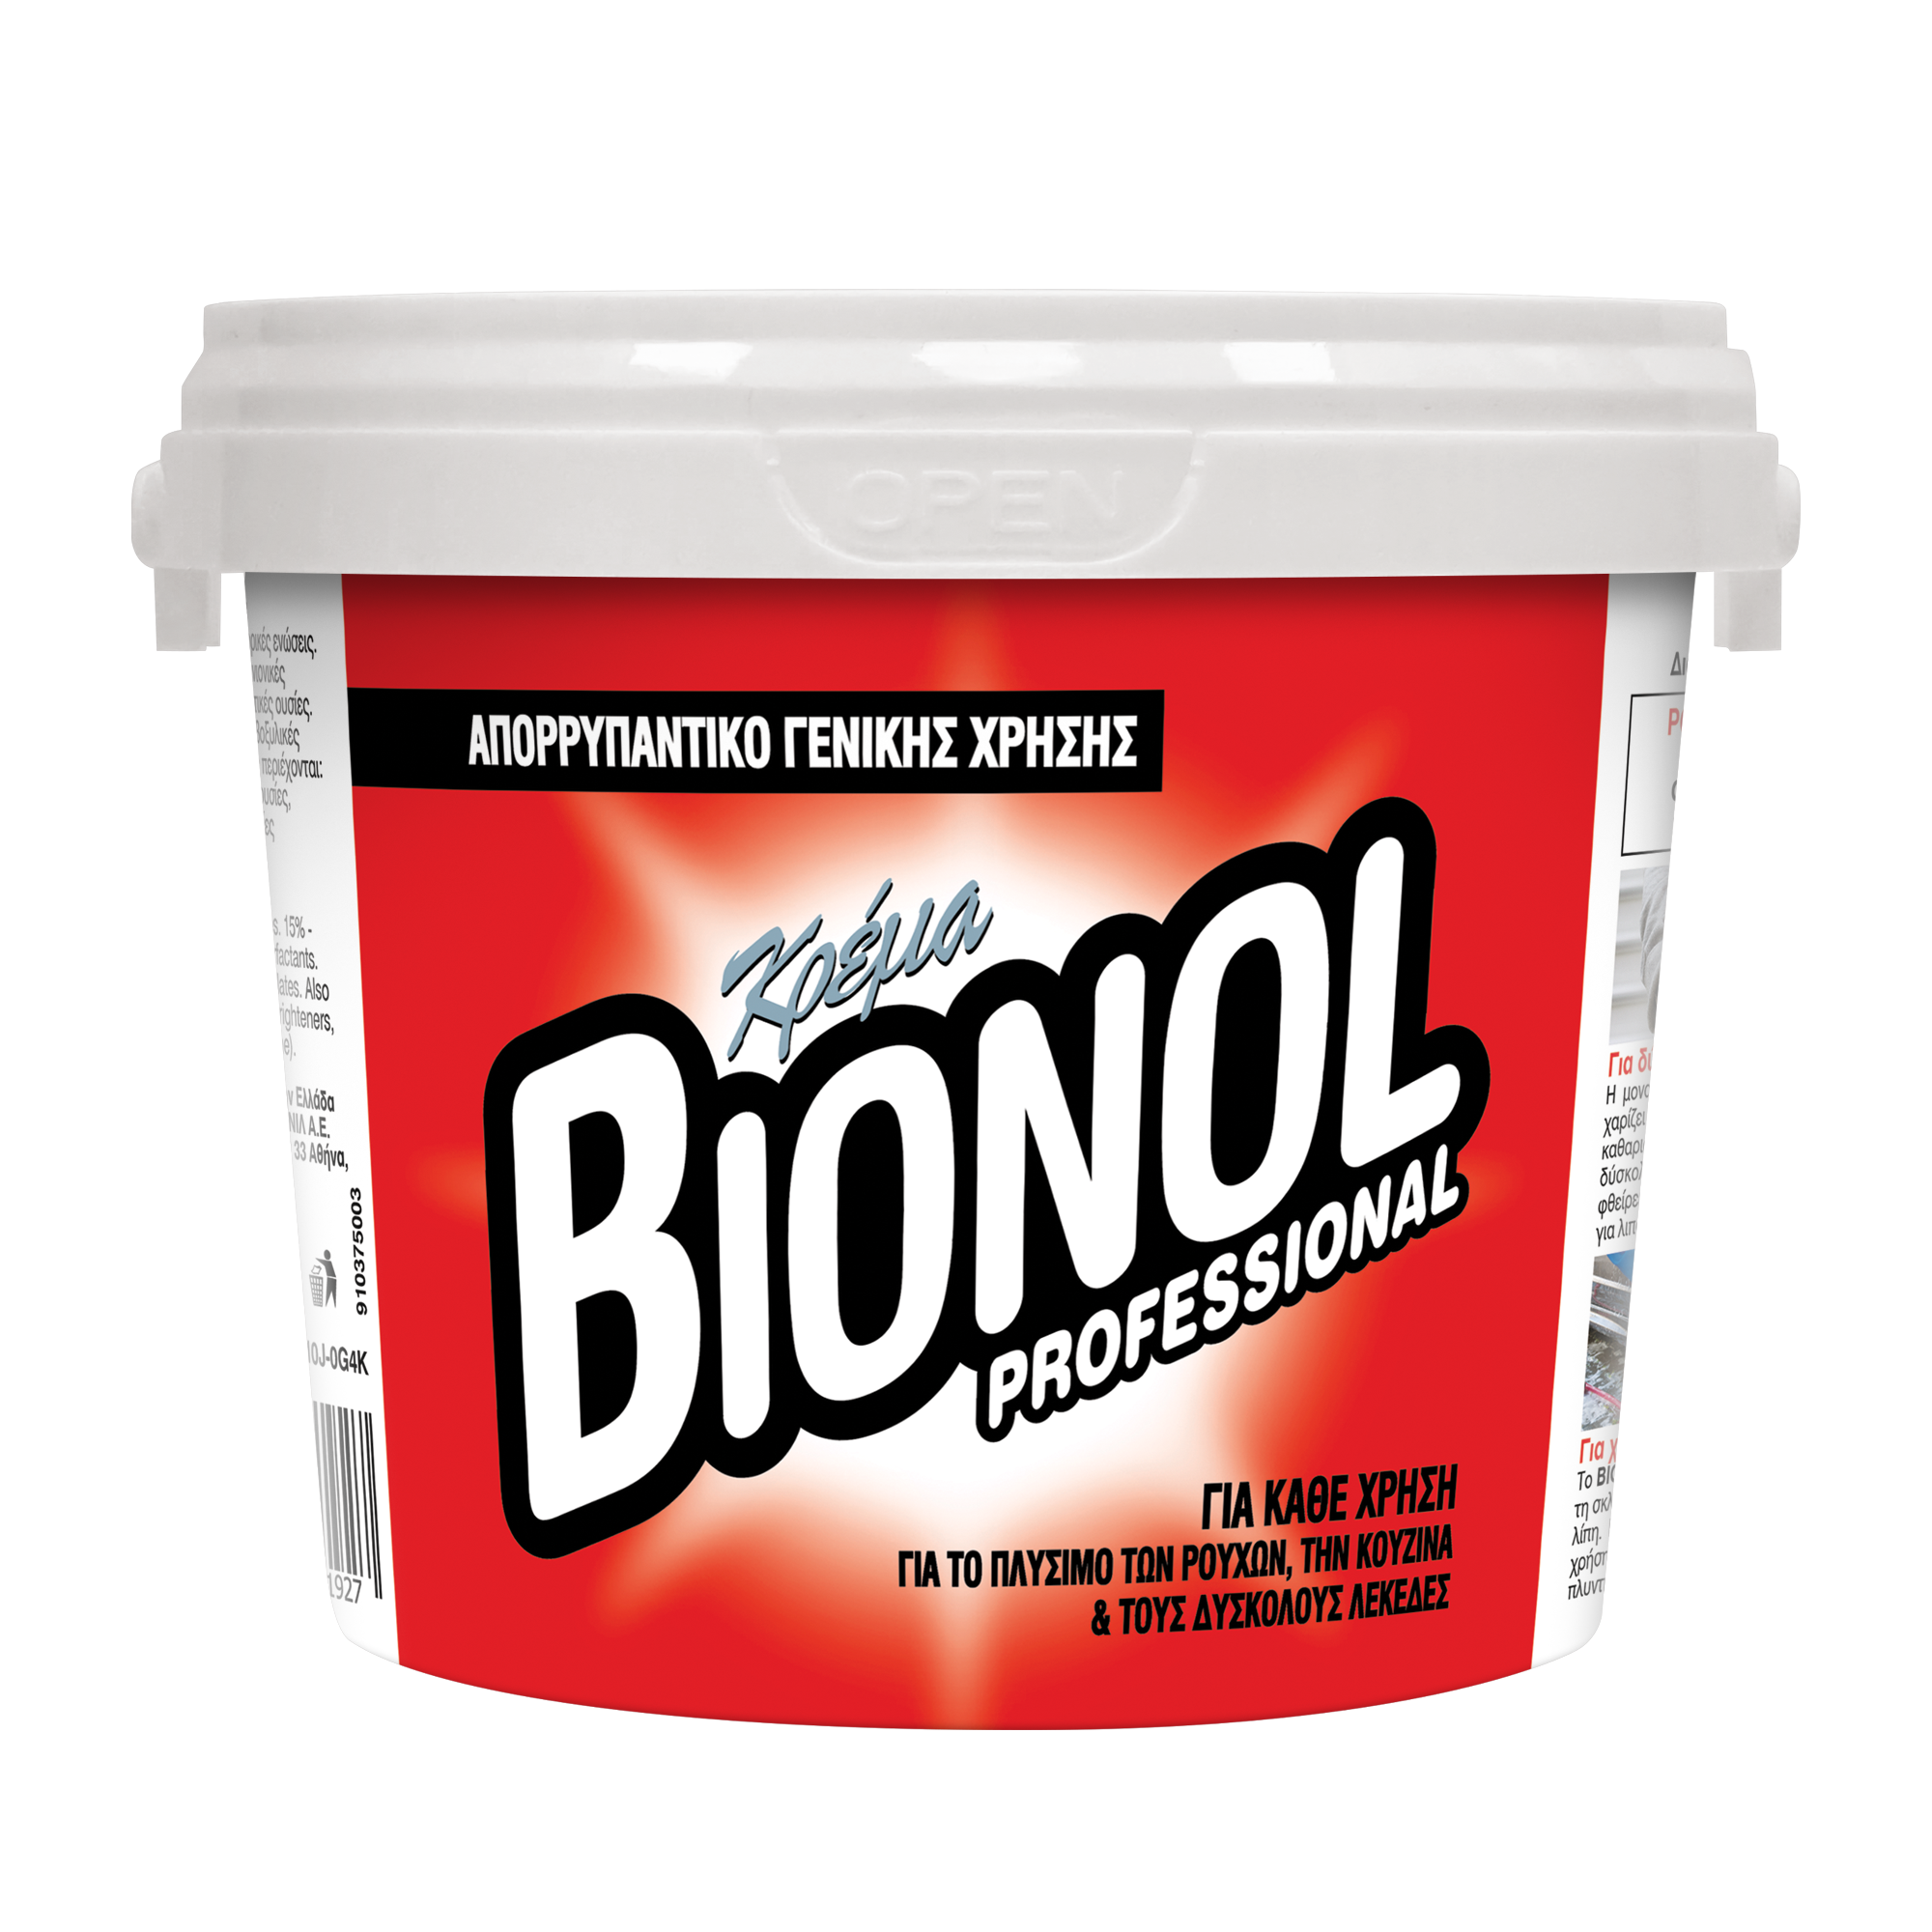 Κρέμα καθαρισμού γενικής χρήσης, πολυκαθαριστικό Bionol professional 800gr